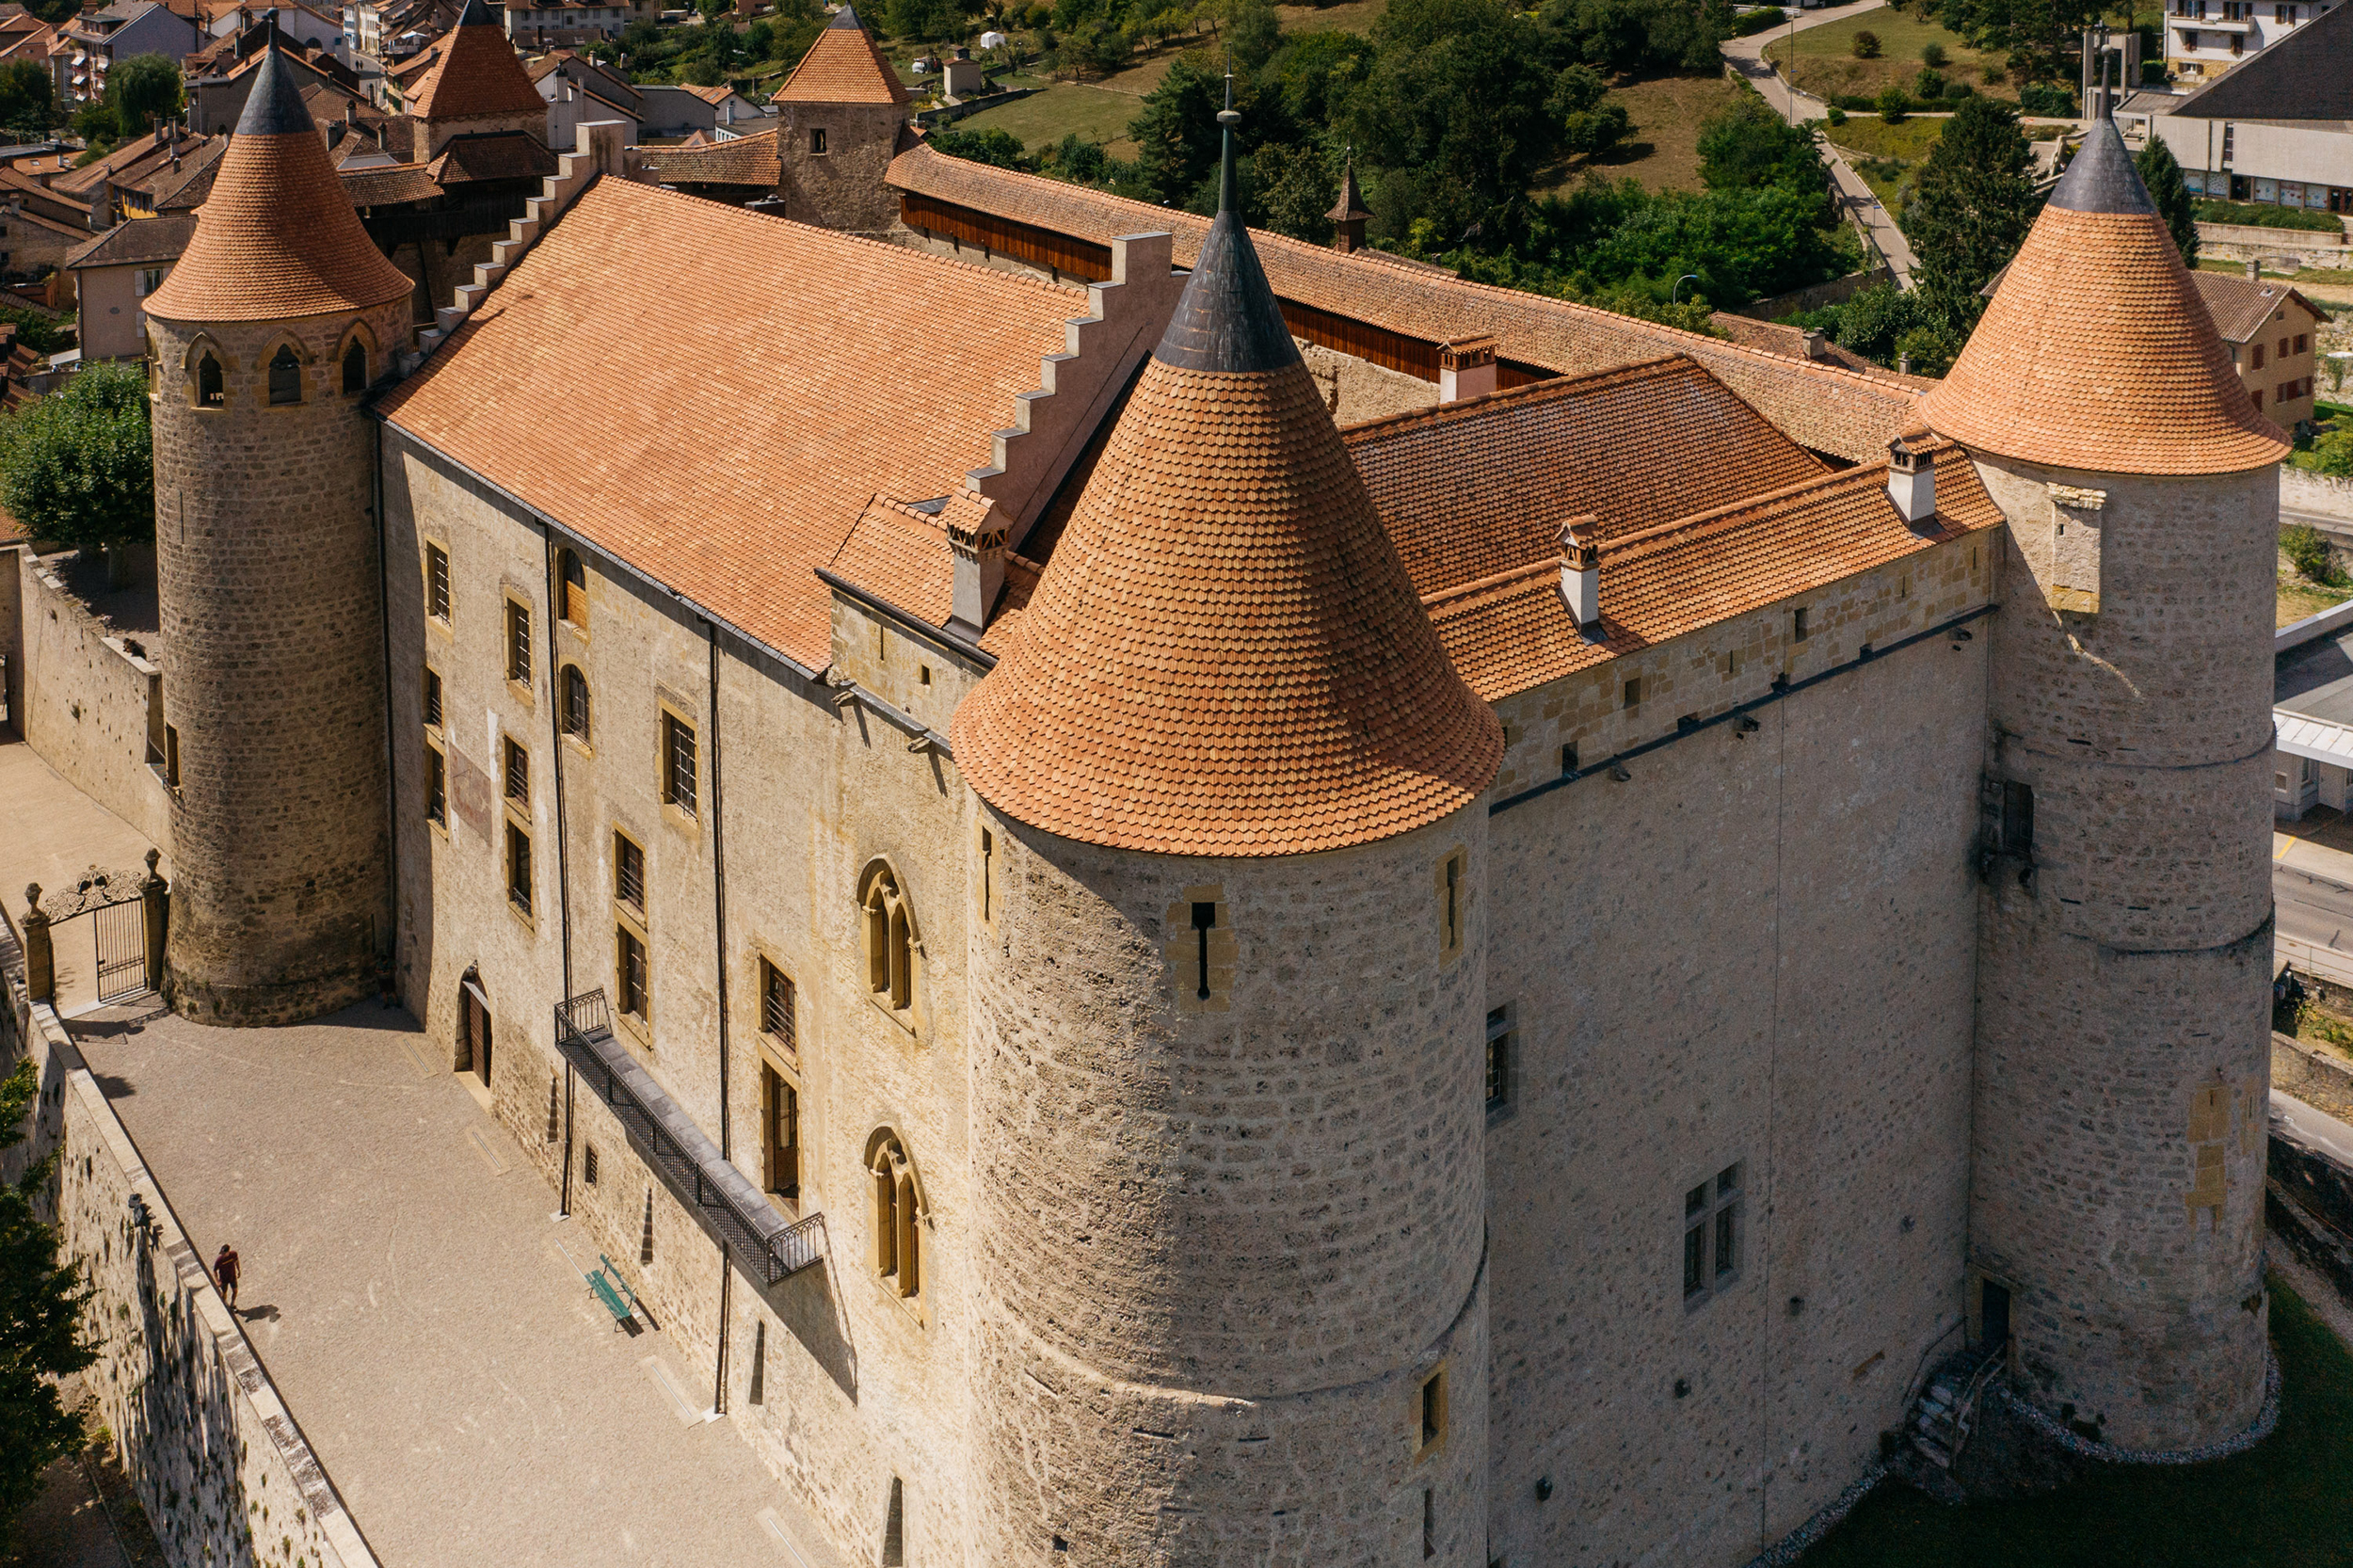 Découvrez le charme médiéval du château de Grandson pendant sa rénovation